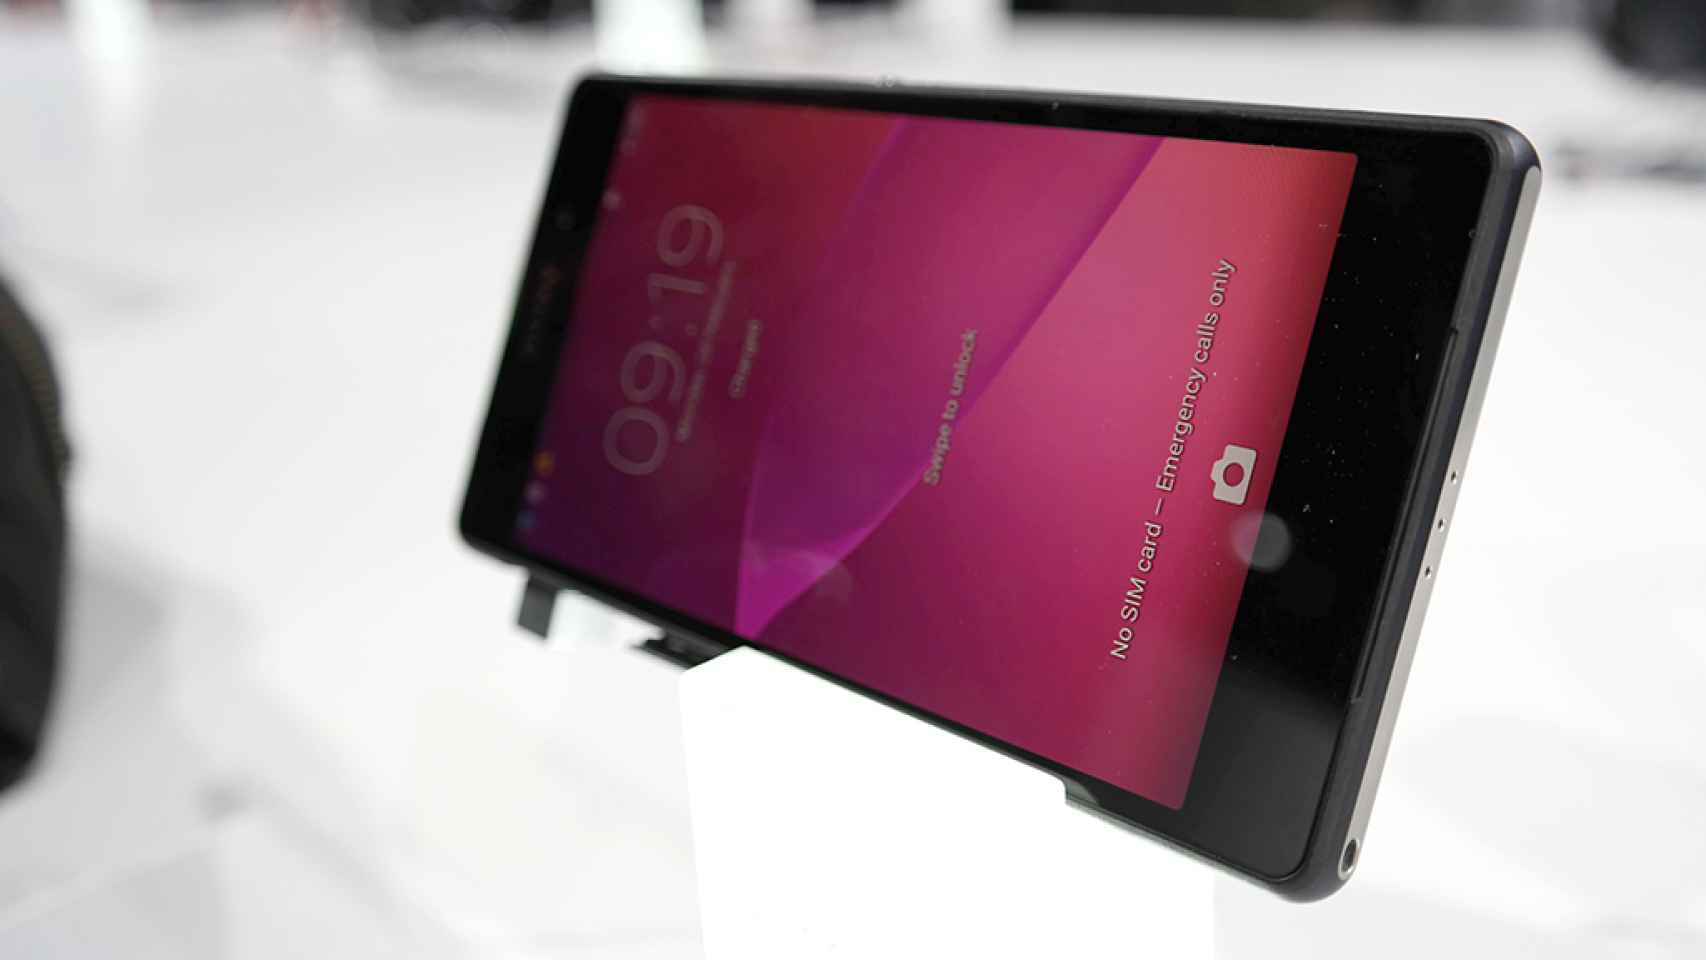 Sony Xperia Z2, primeras impresiones en vídeo